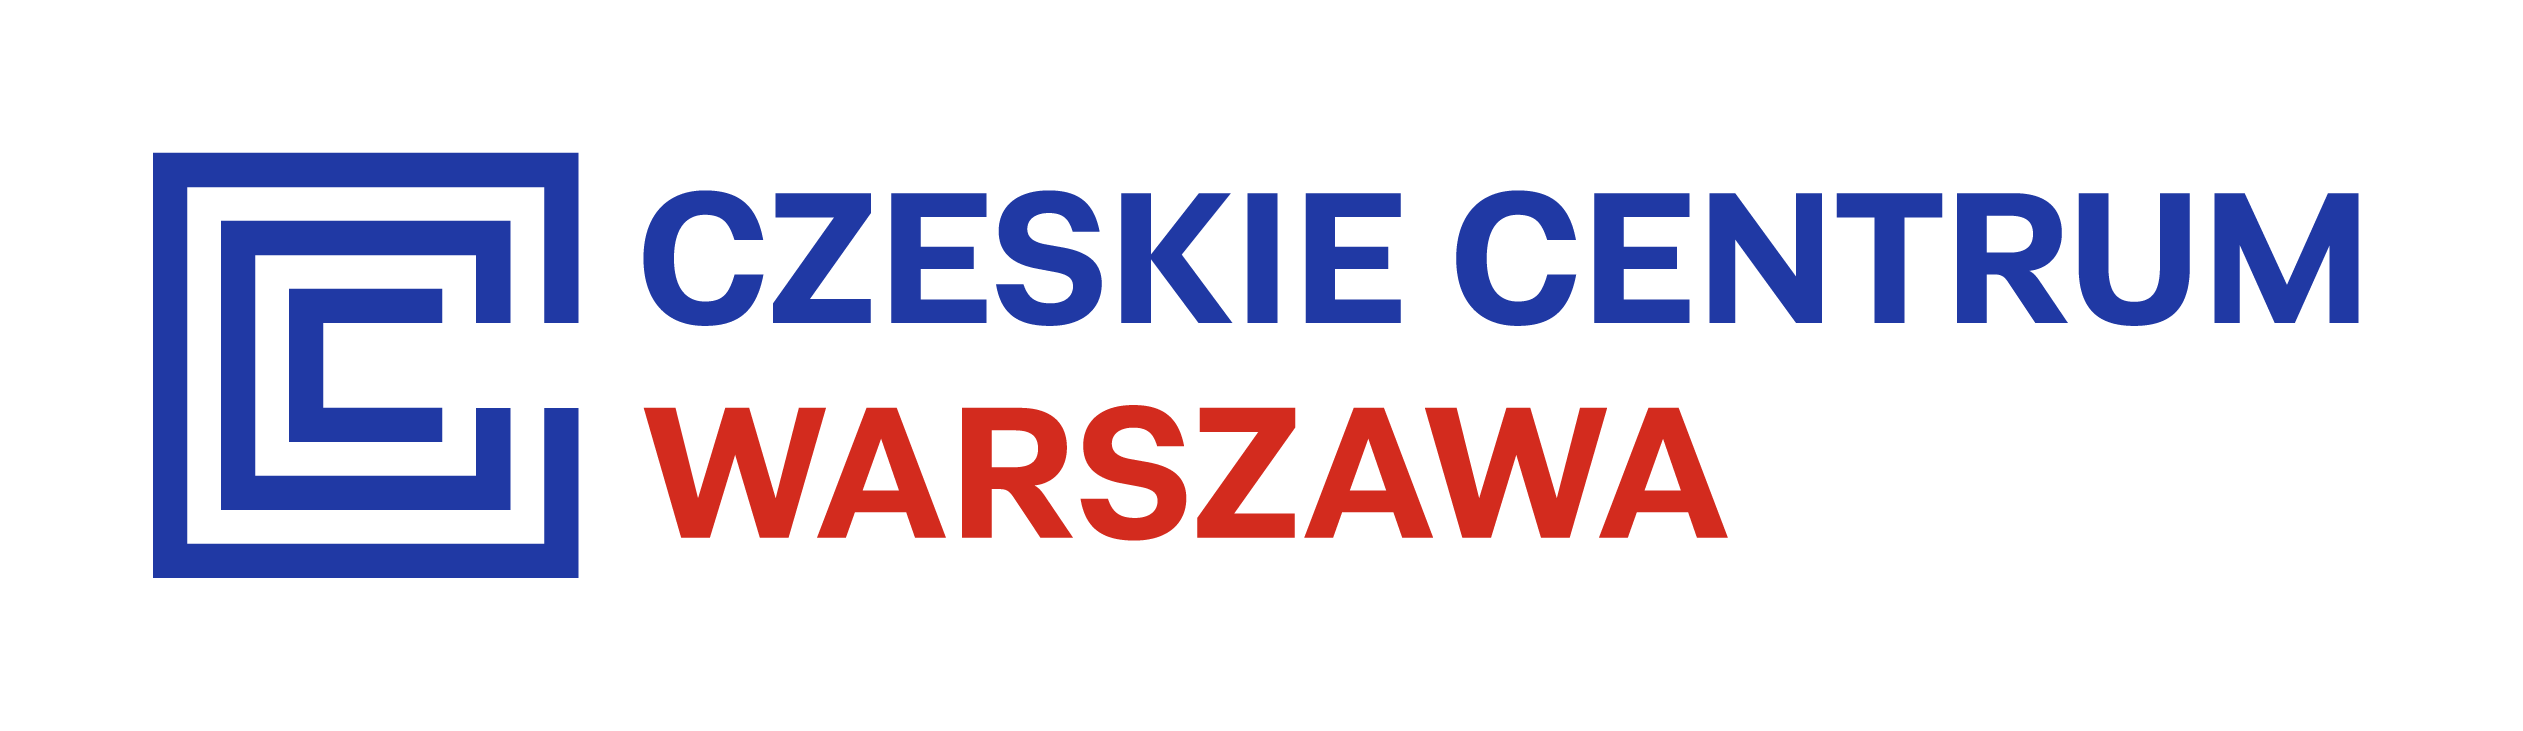 CzeskieCentrum